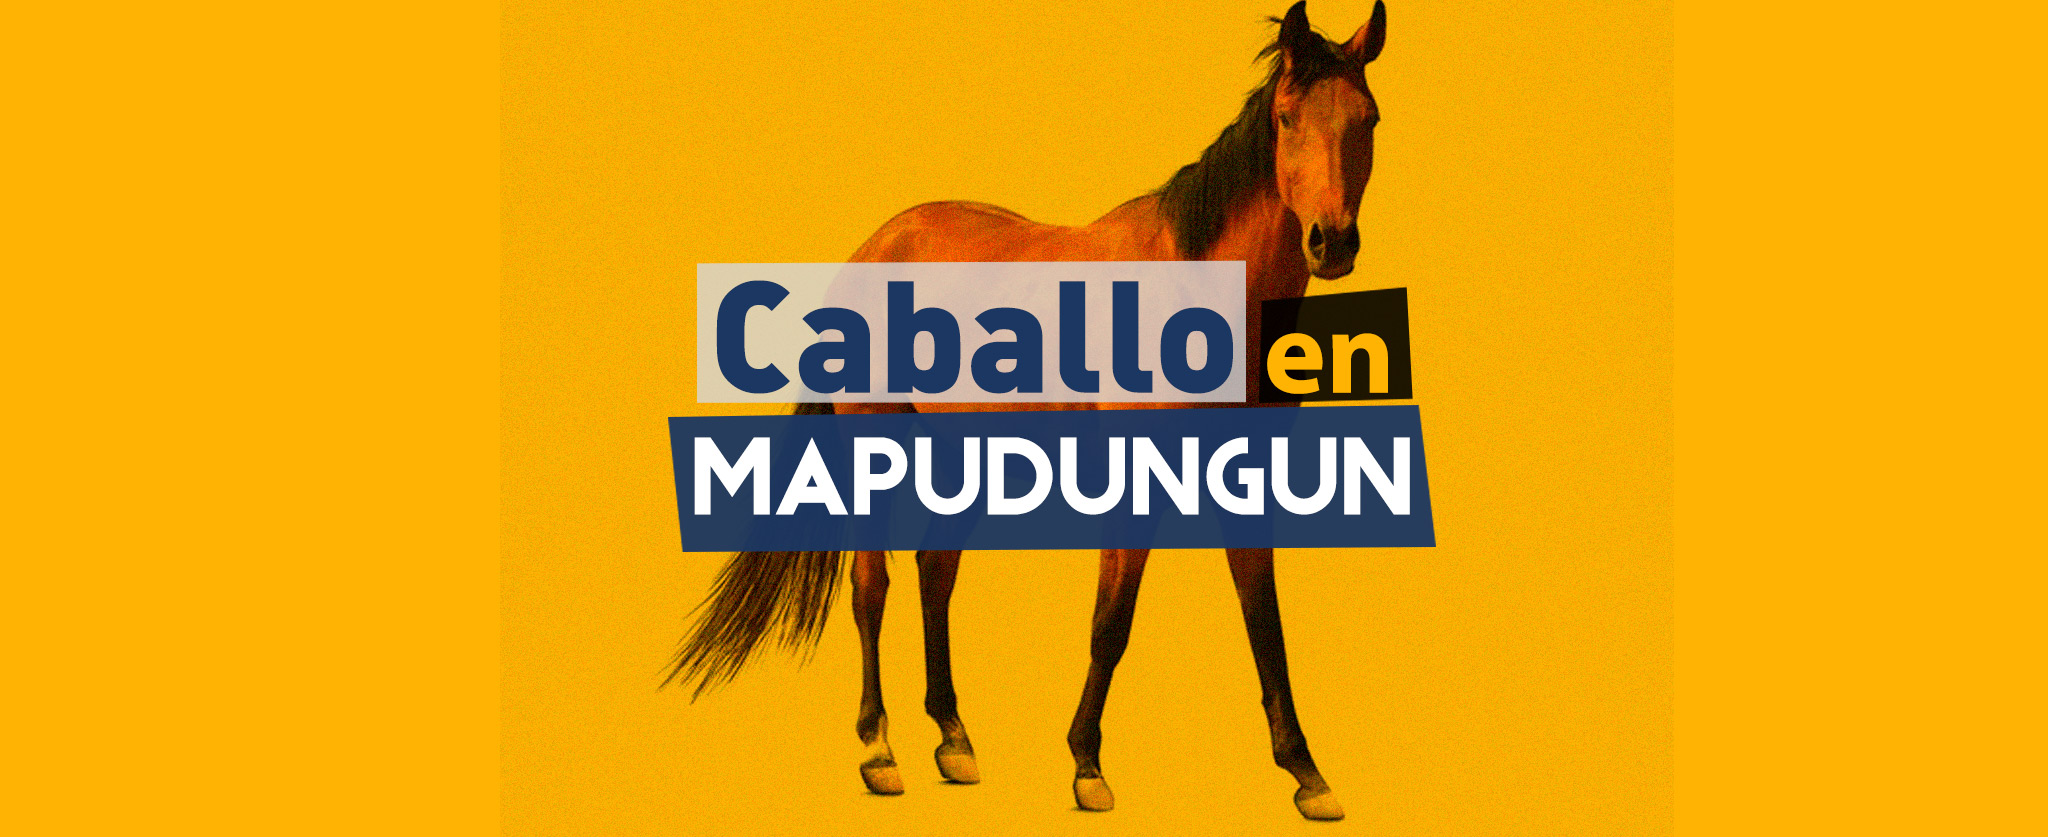 caballo en idioma mapuche